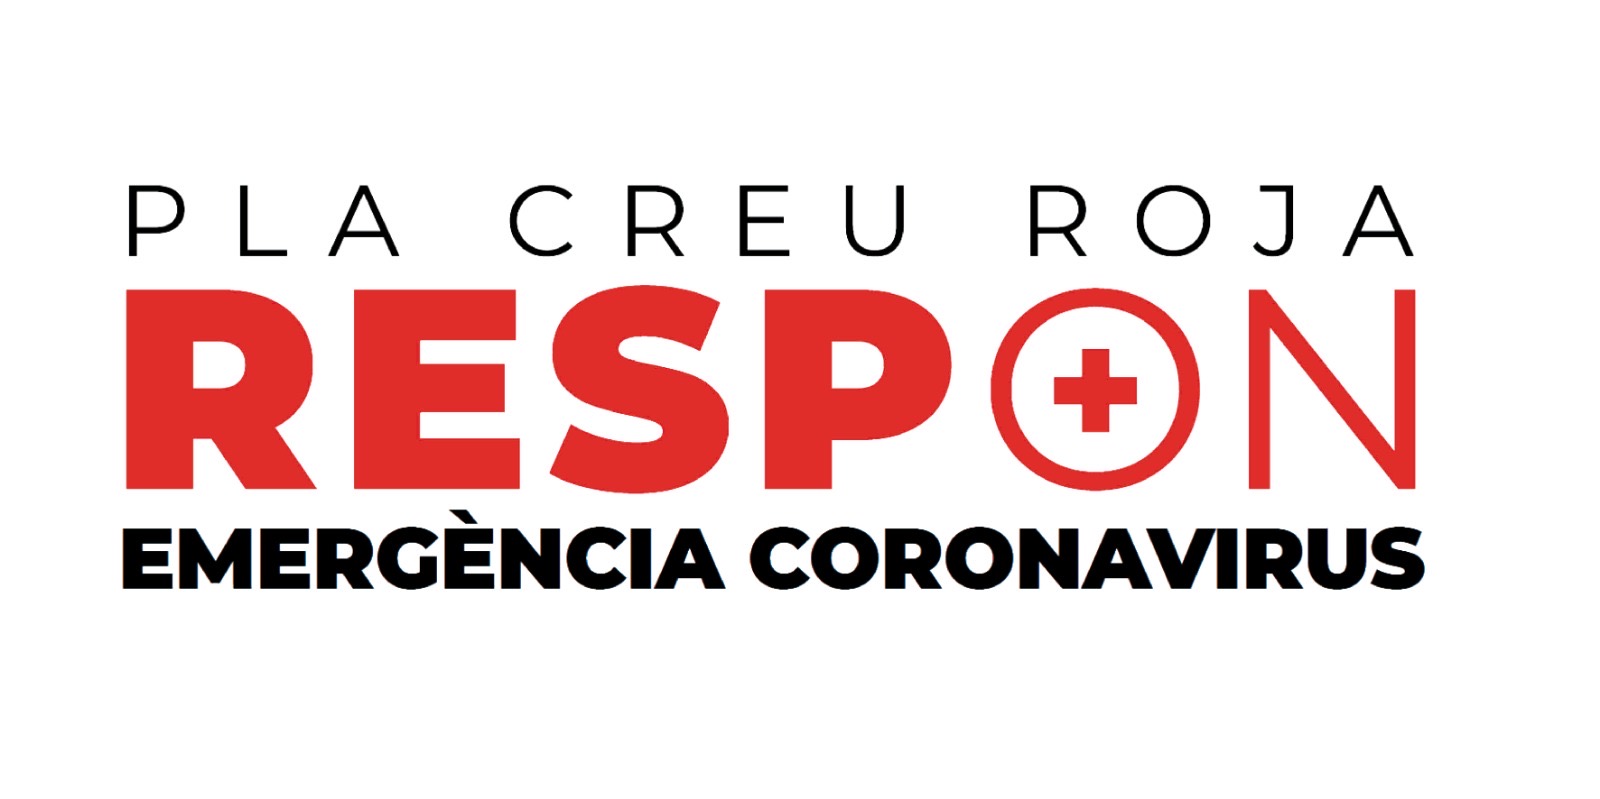 Les principals institucions econòmiques catalanes  se sumen a la Creu Roja contra la COVID-19 